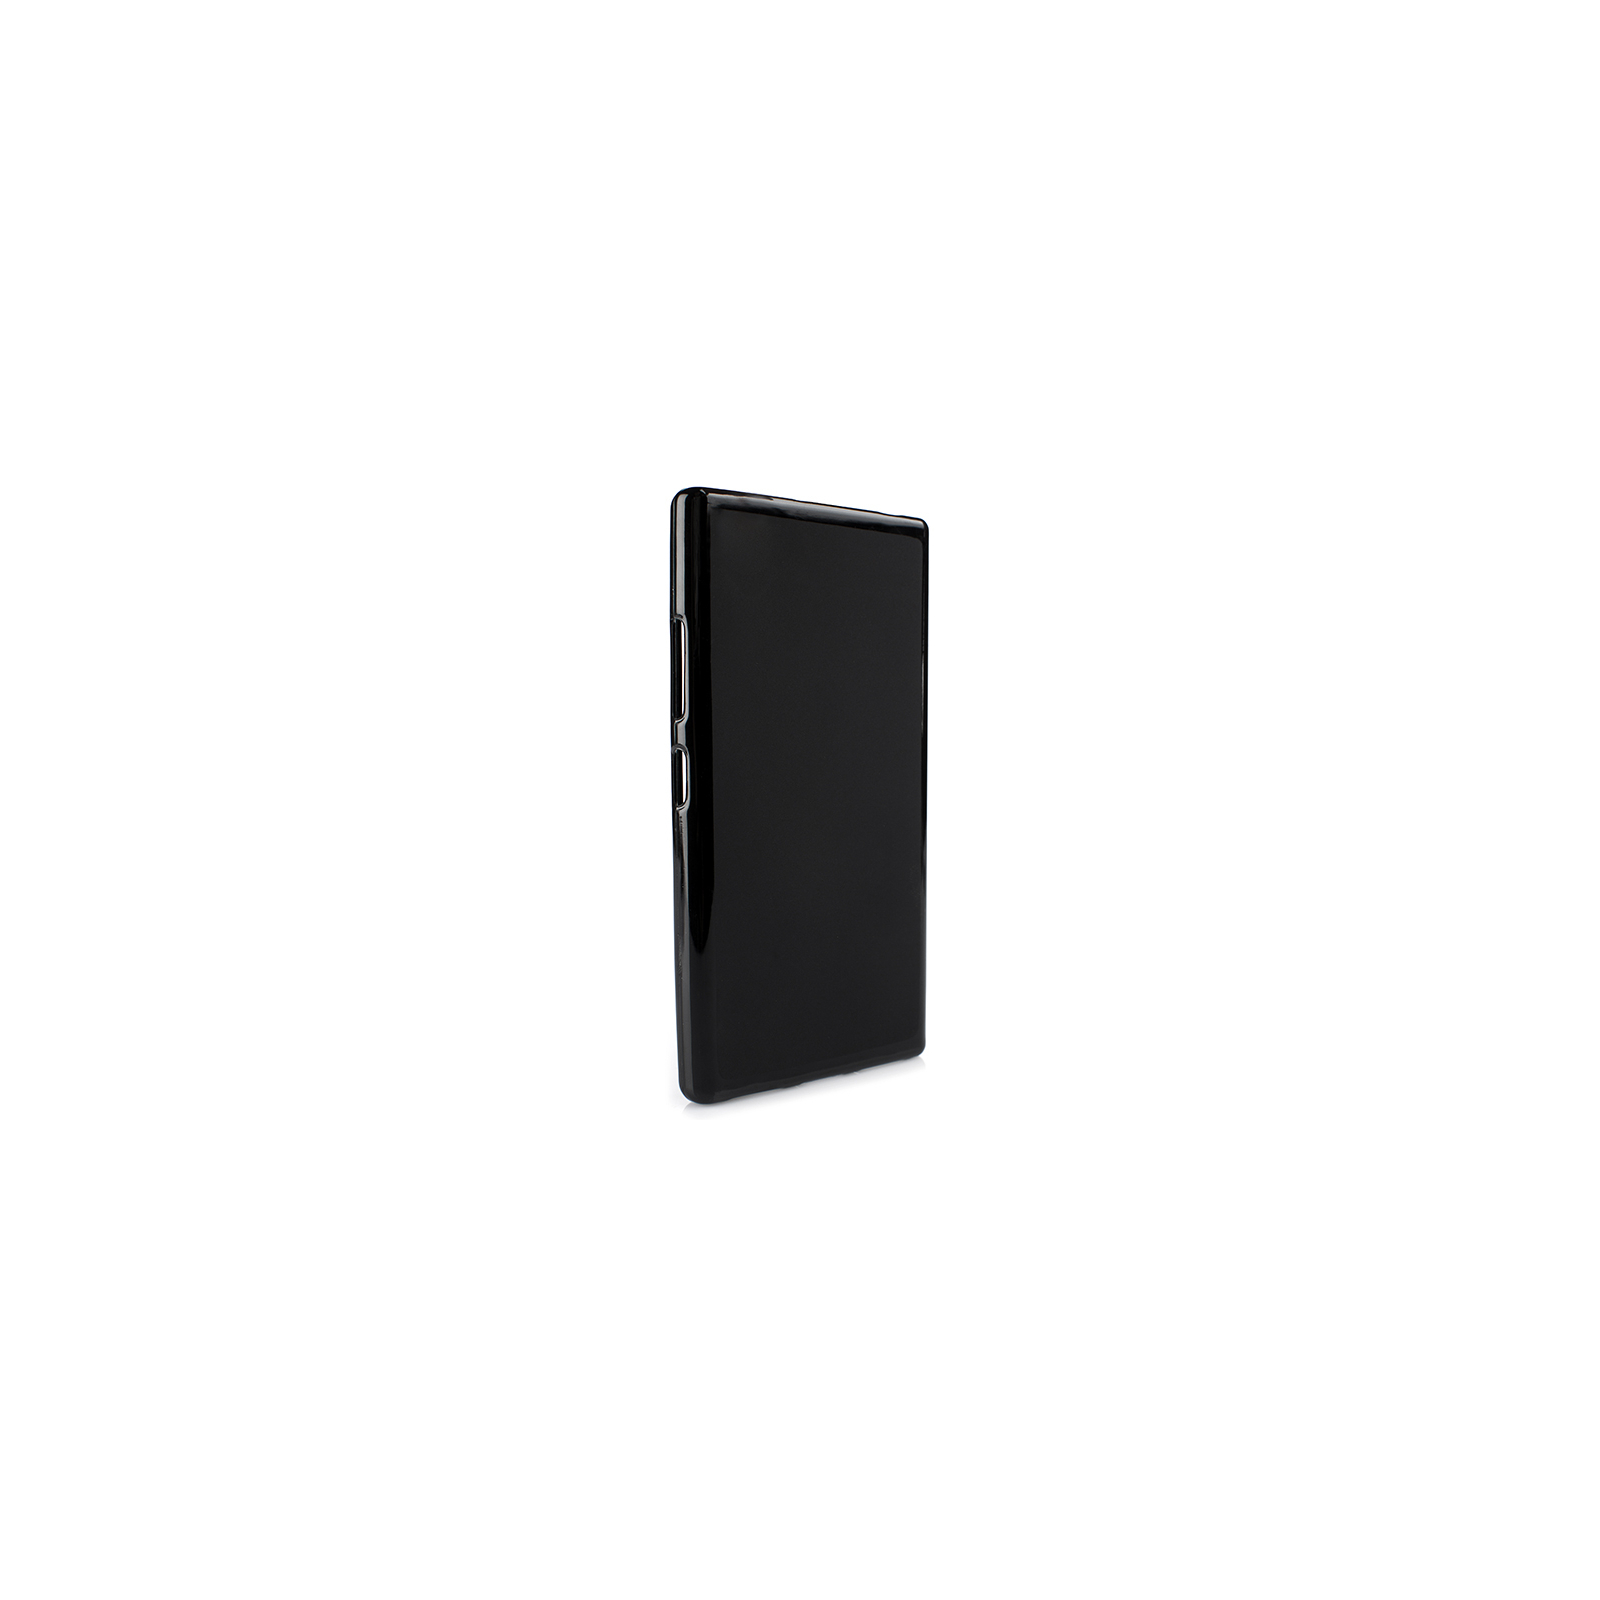 Чехол для моб. телефона Drobak для LG Max X155 LG (Black) (215572)